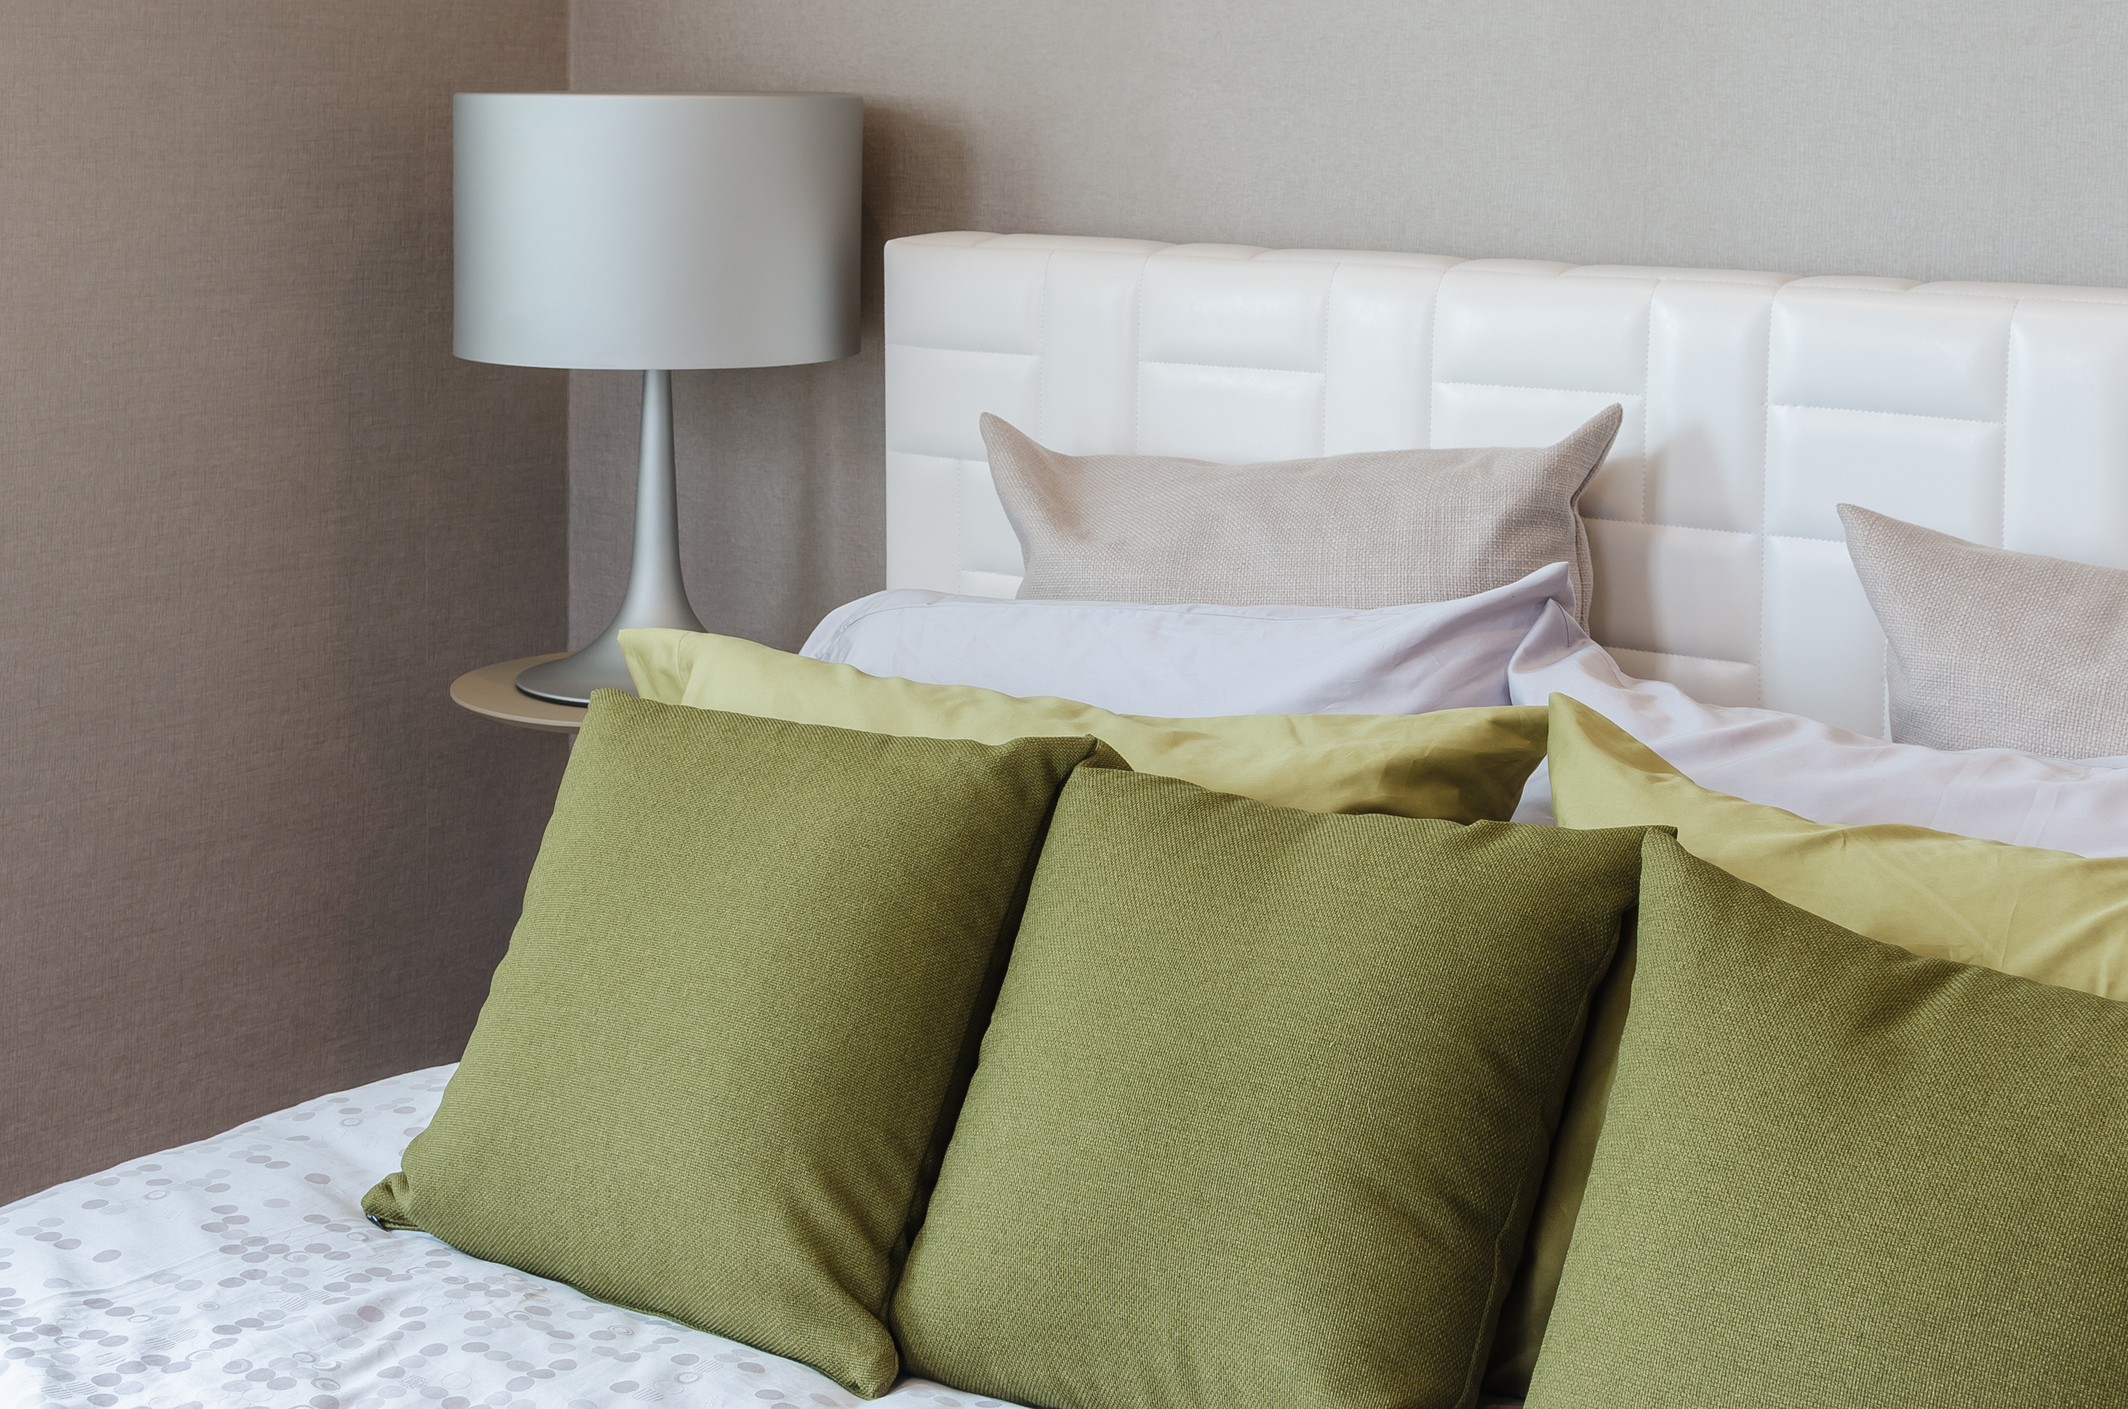 Egy-két zöld színű párnát elég becsempészned a hálószobádba, hogy trendivé válj!